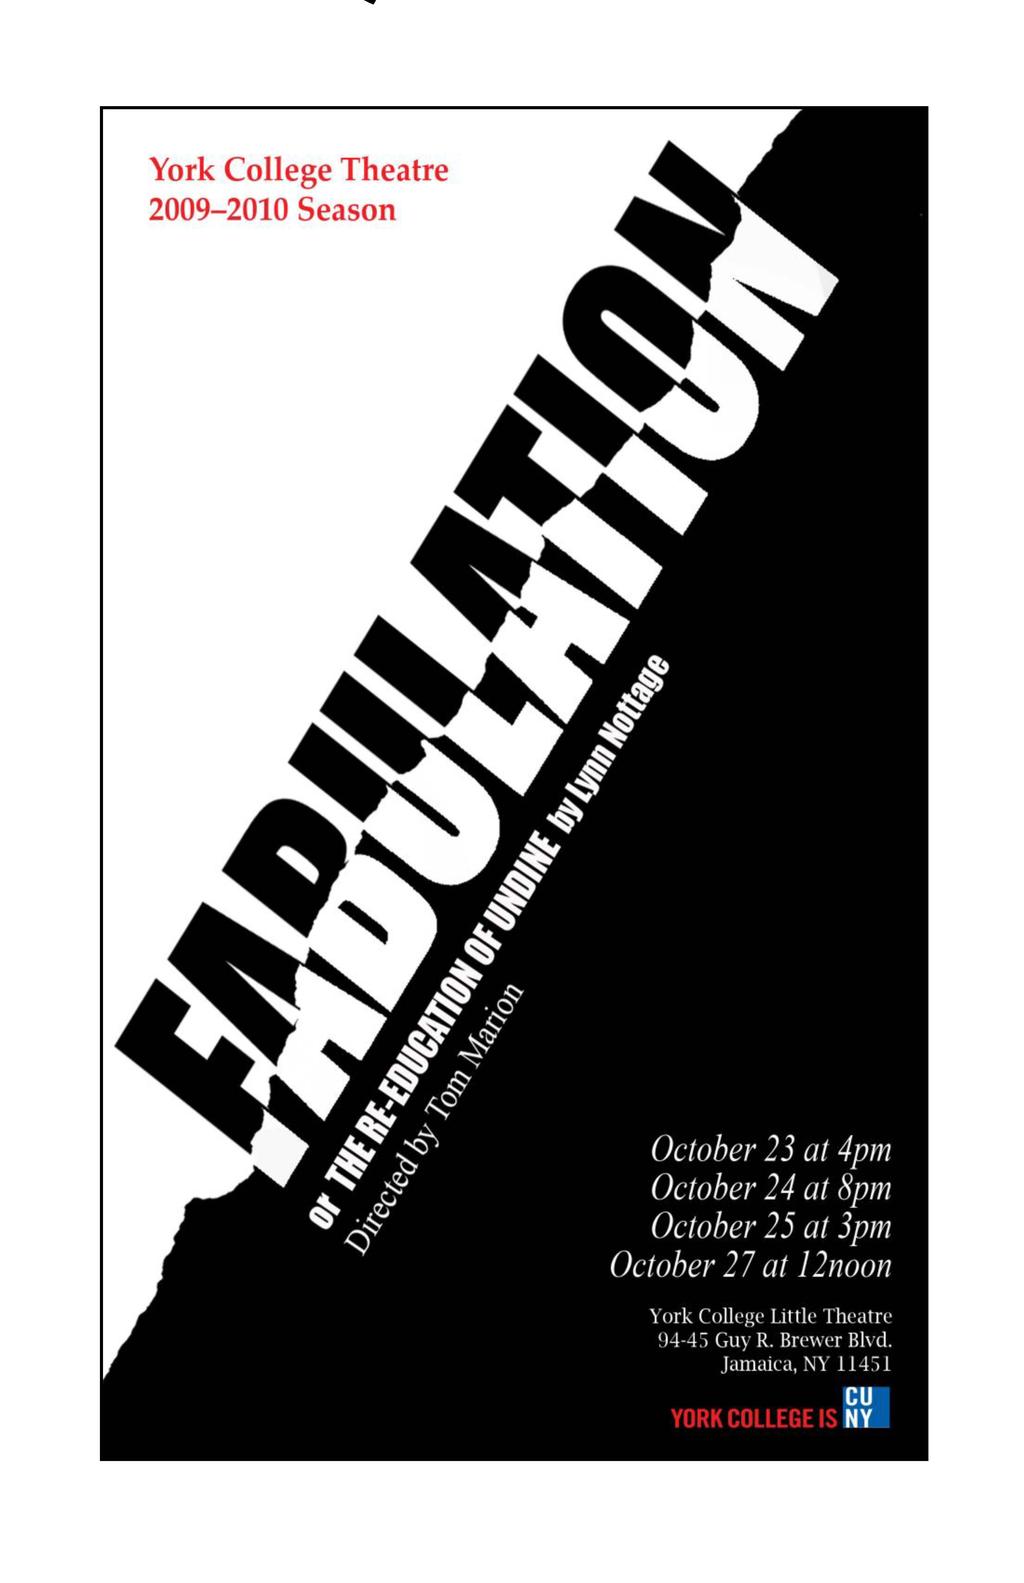 York College Theatre 2009-2010 Season October 23 al 4pm October 24 at 8pm October 25 at 3pm October